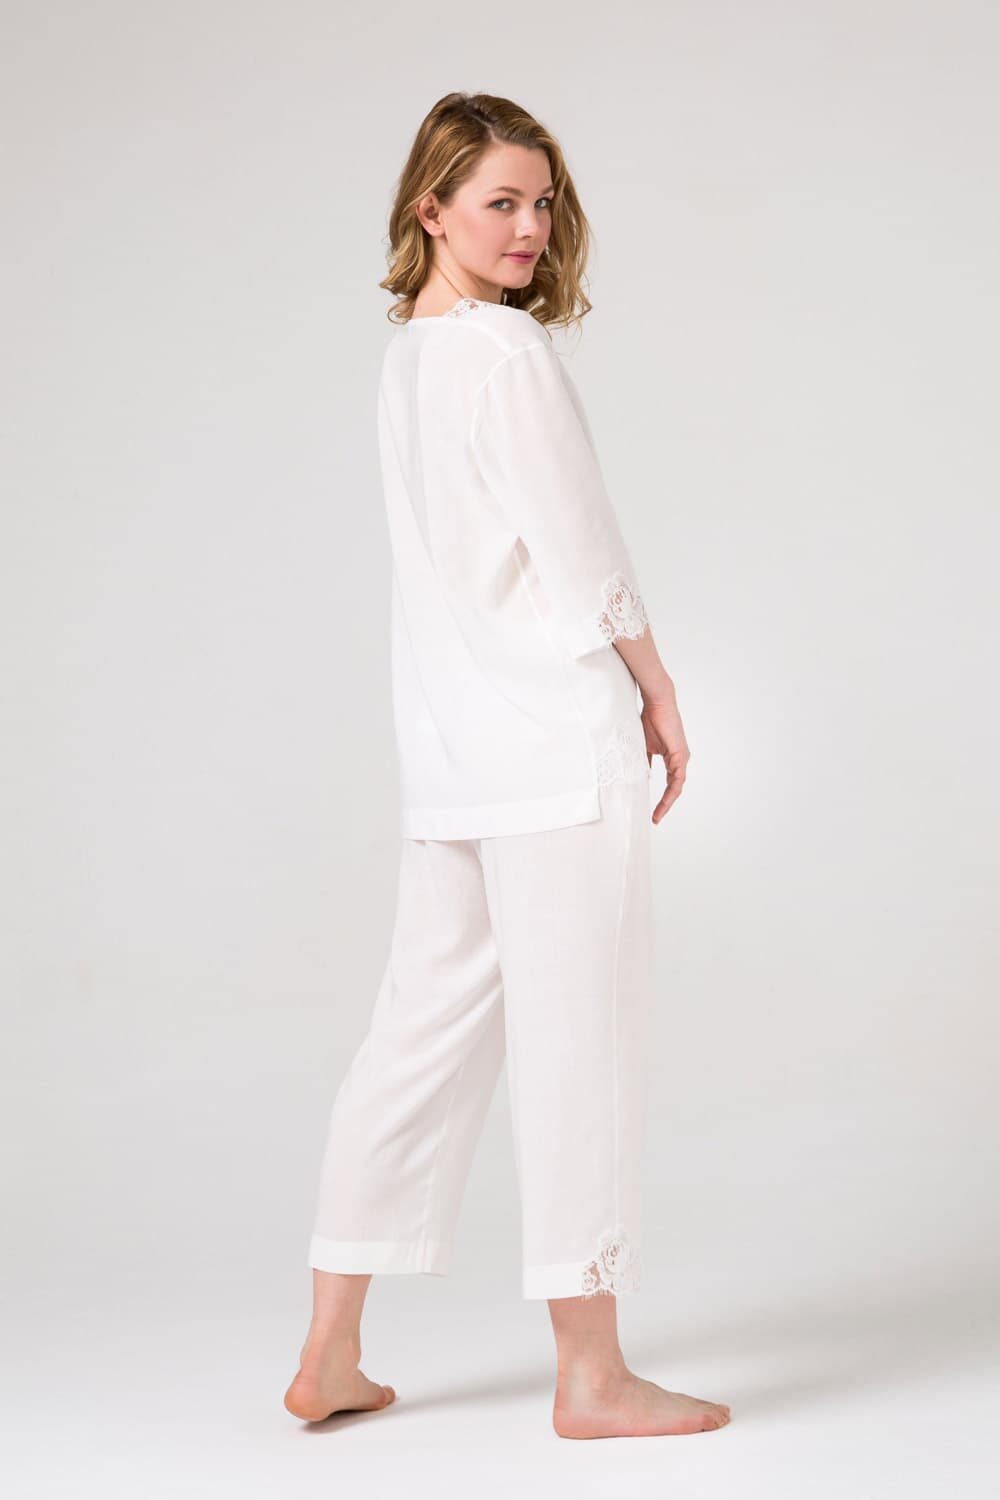 Белый пижамный комплект блуза и брюки с уникальным хлопковым кружевом.